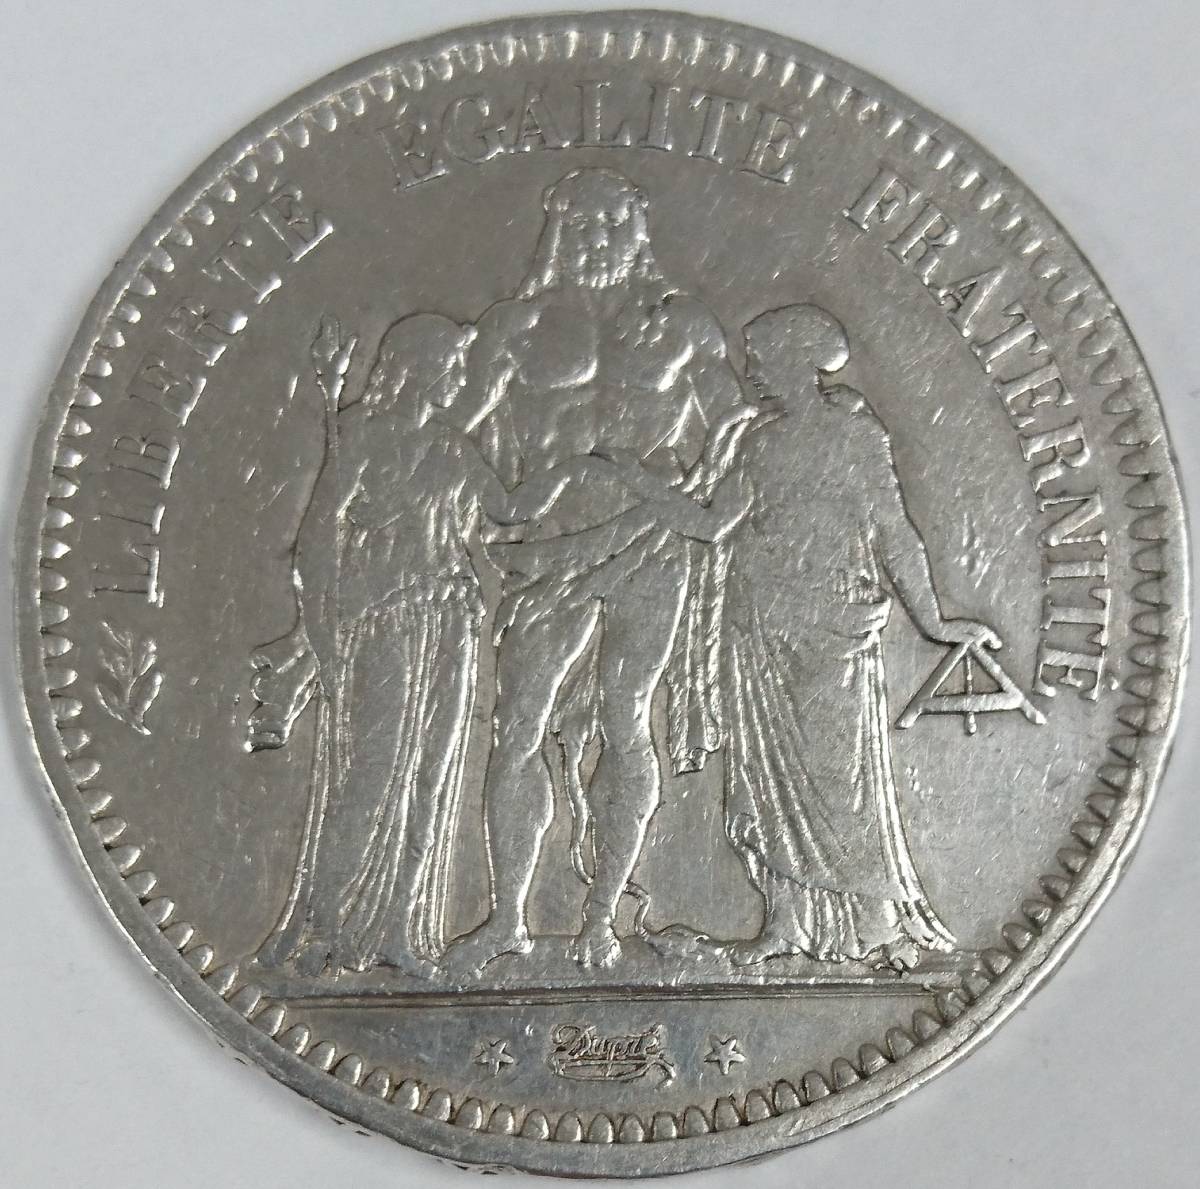  原文:◇ フランス第ニ共和制 ヘラクレス 5フラン 銀貨 1849年 フランス銀貨 ◇